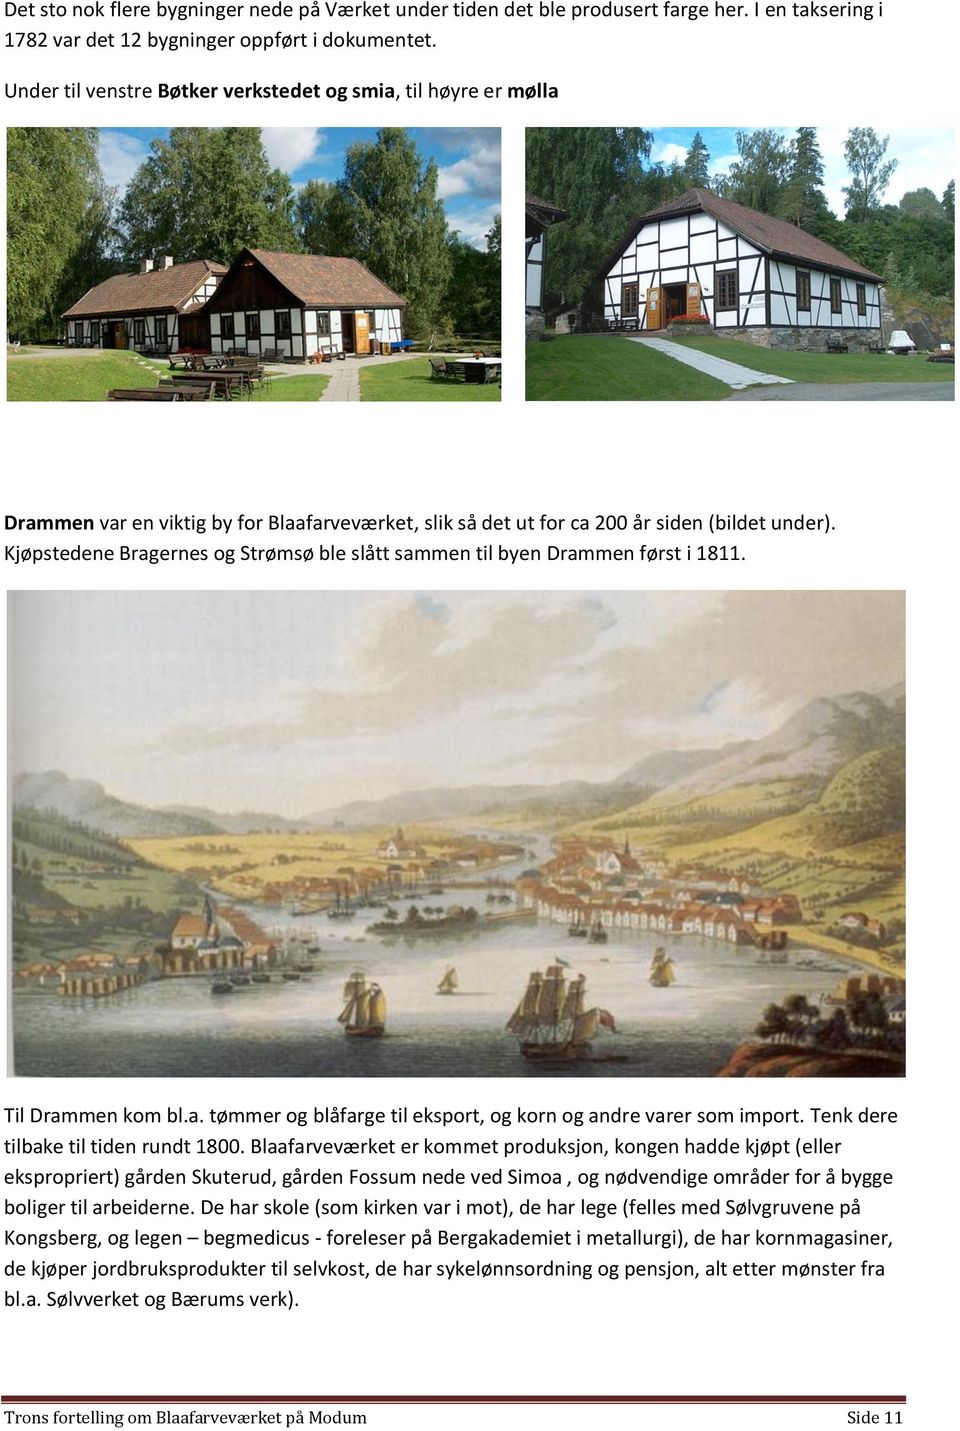 Kjøpstedene Bragernes og Strømsø ble slått sammen til byen Drammen først i 1811. Til Drammen kom bl.a. tømmer og blåfarge til eksport, og korn og andre varer som import.